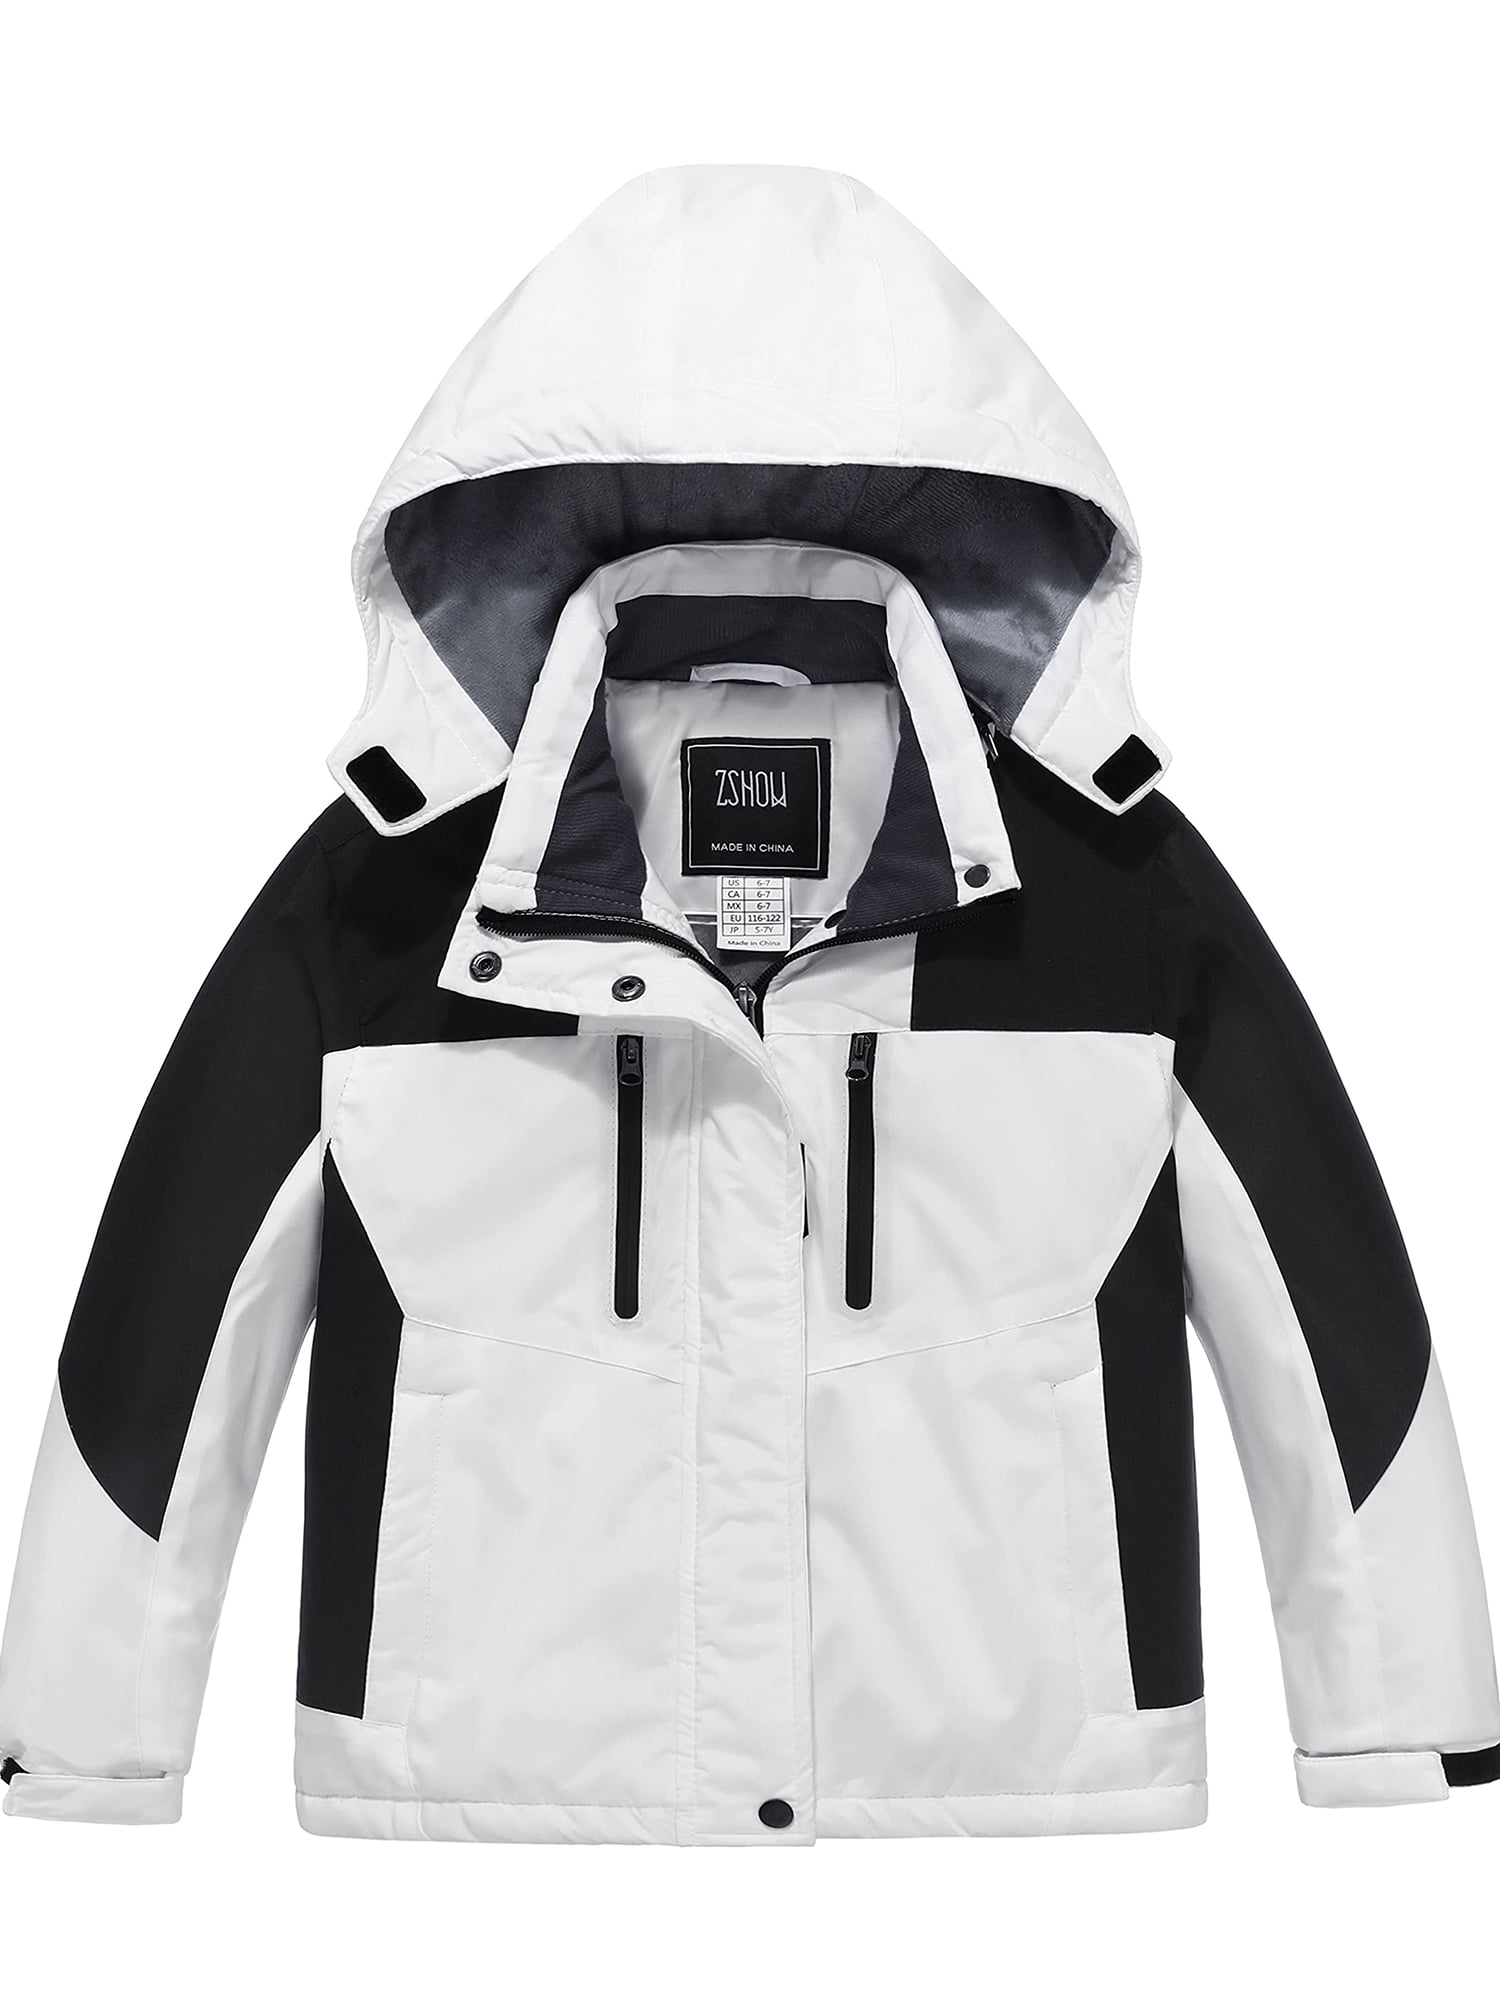 ZSHOW Girl's Ski Jacket Windproof Winter Coat Waterproof Rain Jacket ...